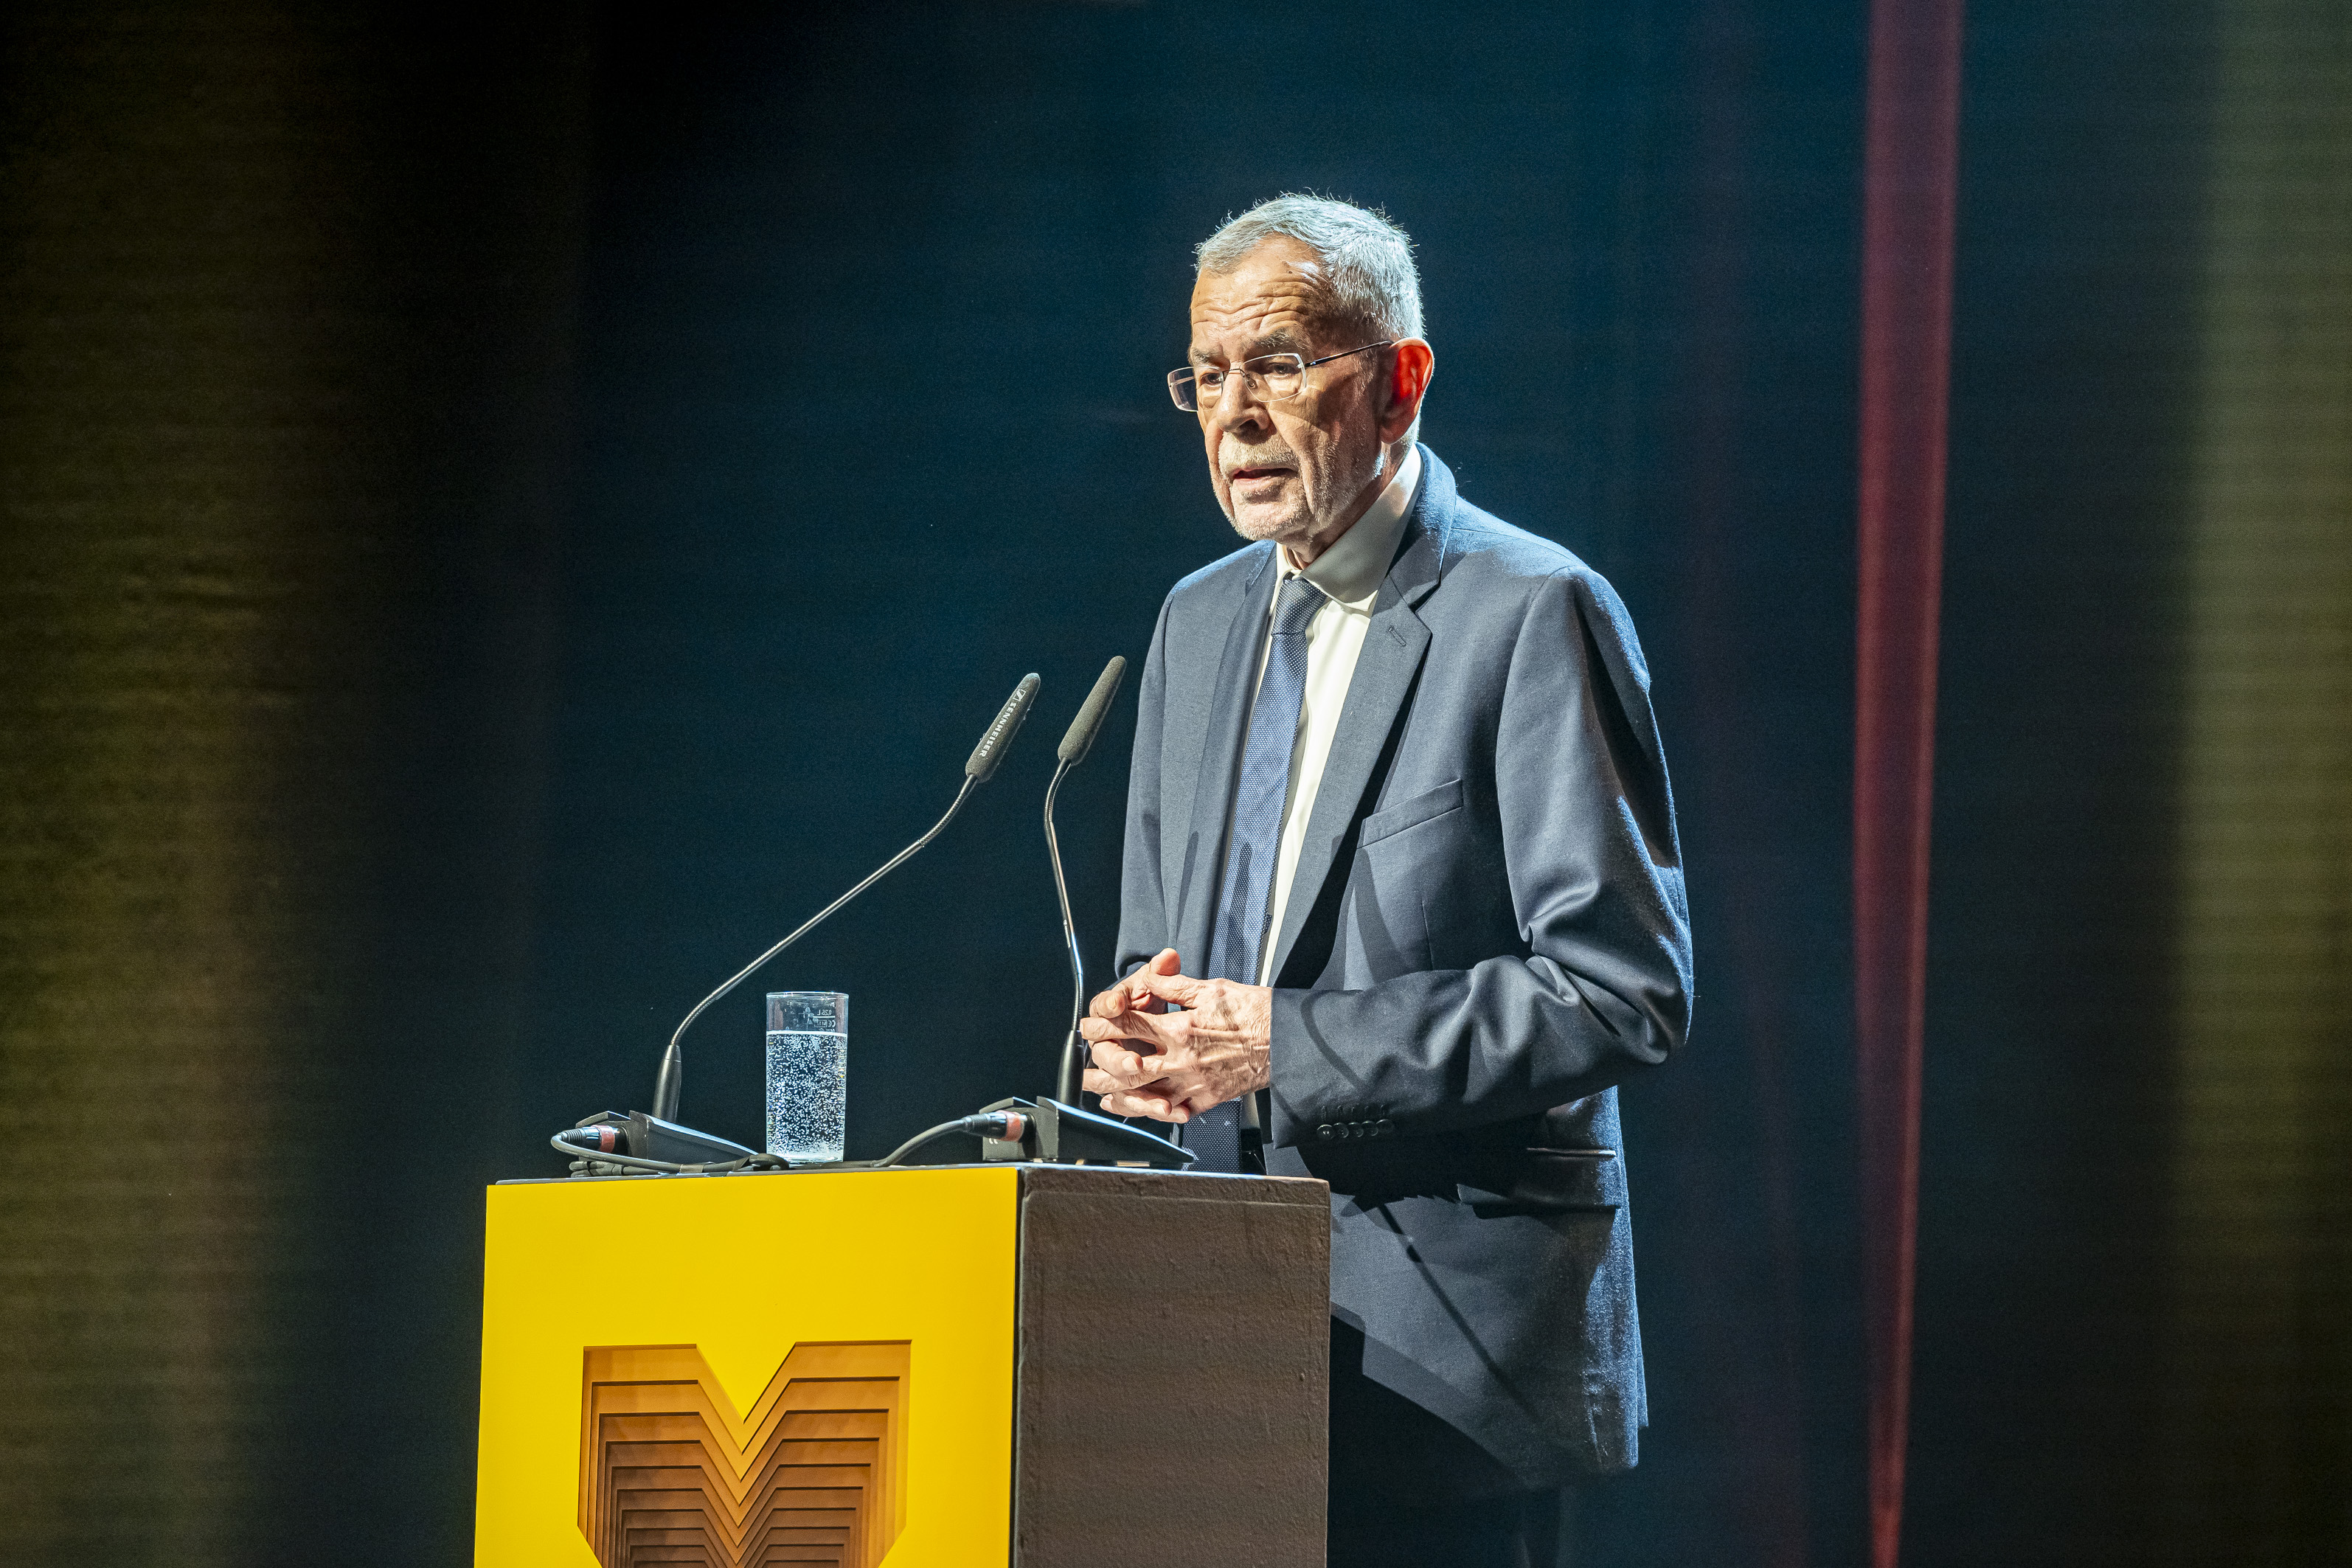 Bundespräsident Alexander Van der Bellen thematisierte in seiner Ansprache den Wert von Demokratie und Freiheit.